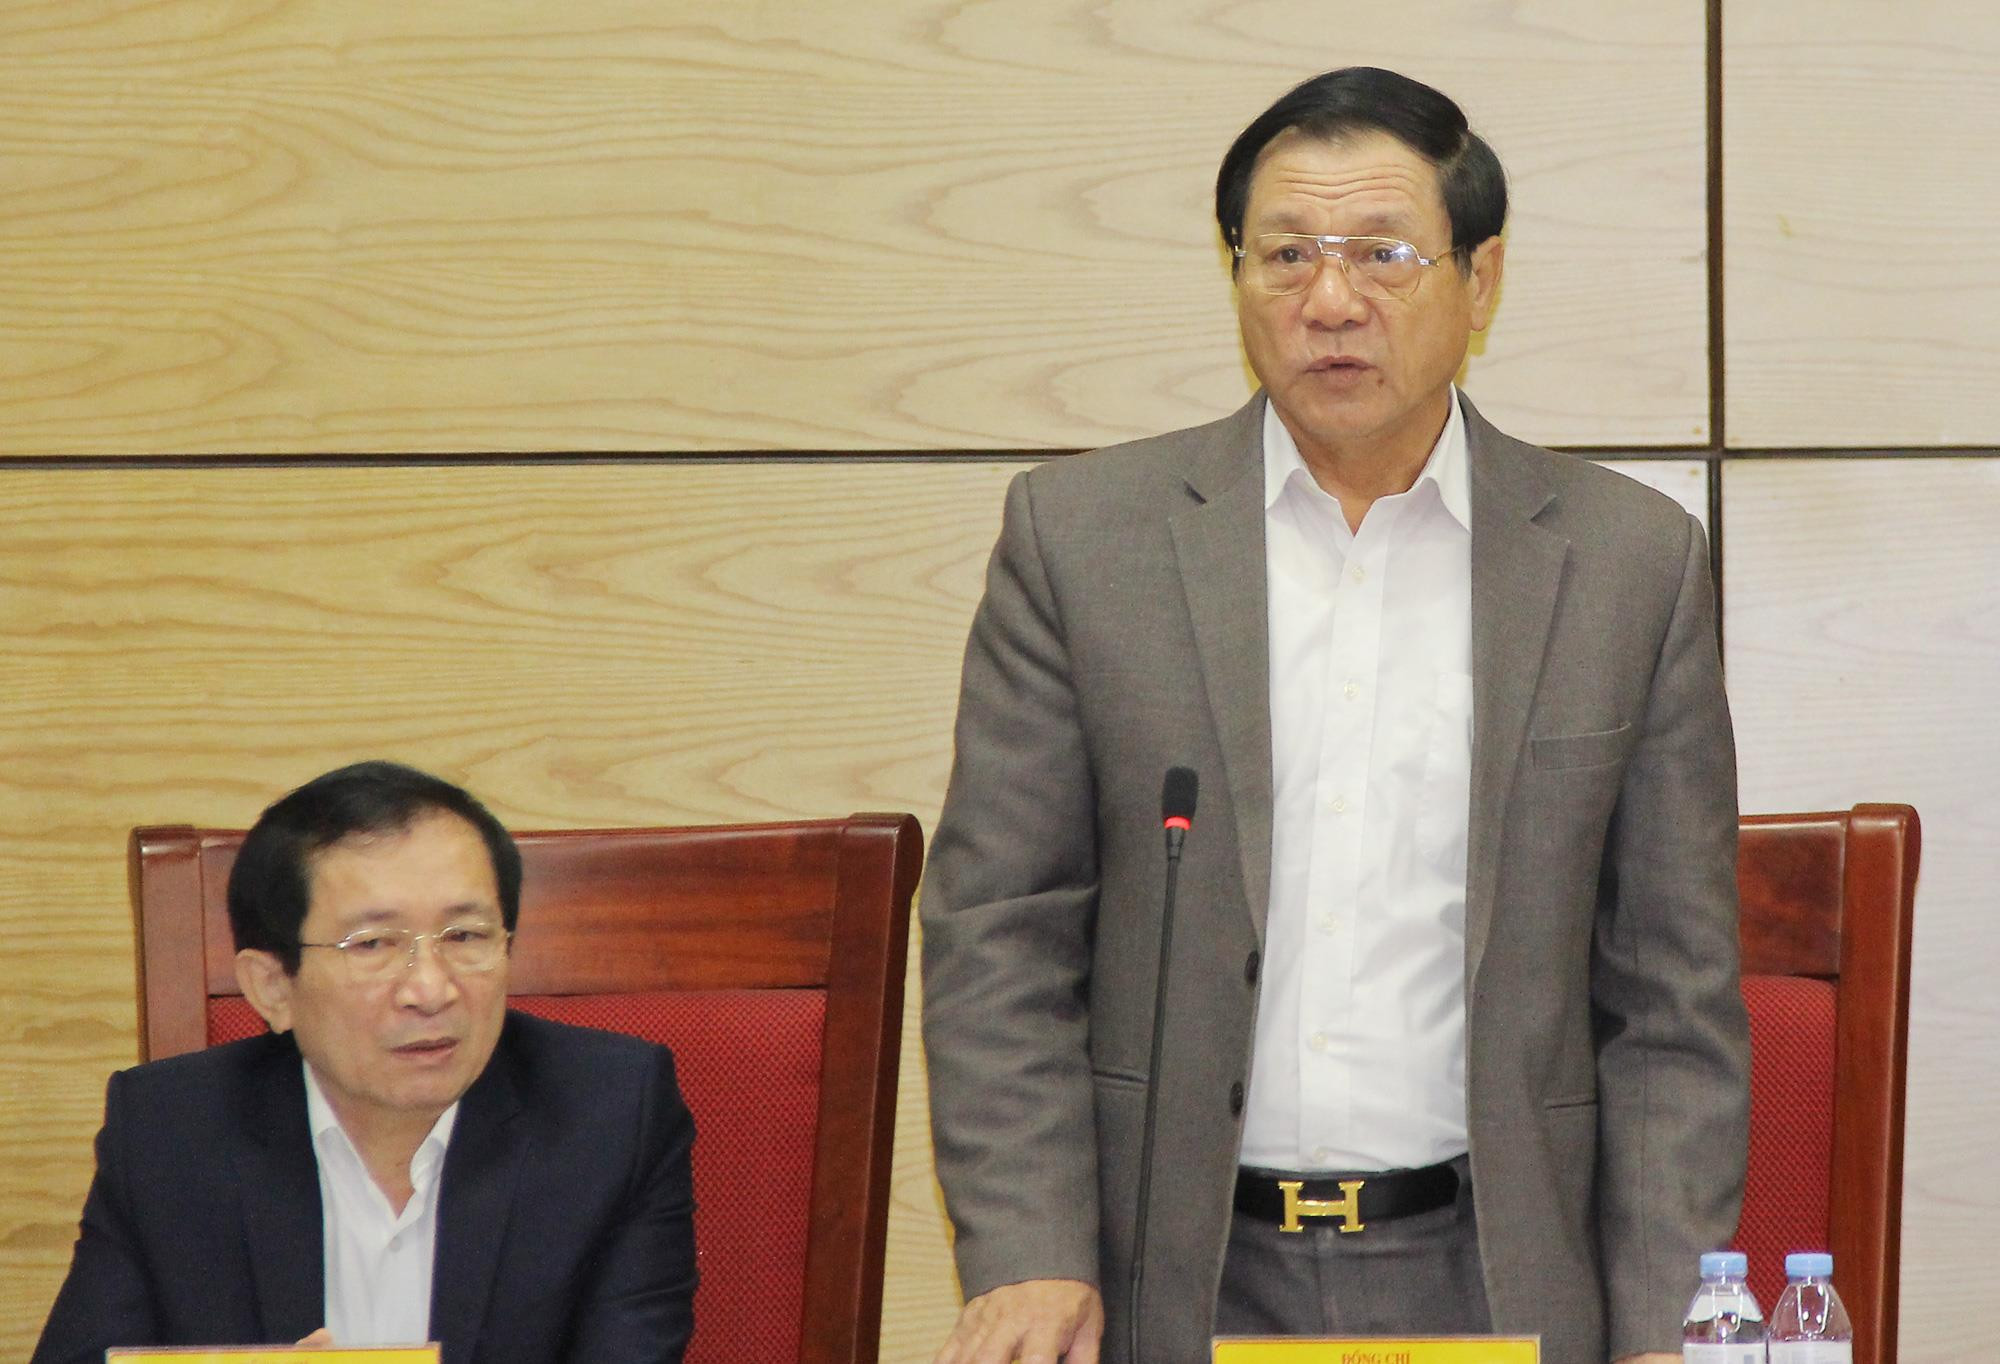 Phó Chủ tịch UBND tỉnh Lê Minh Thông báo cáo về thu - chi ngân sách và quyết toán ngân sách năm 2017 và 2018. Ảnh: Thành Cường